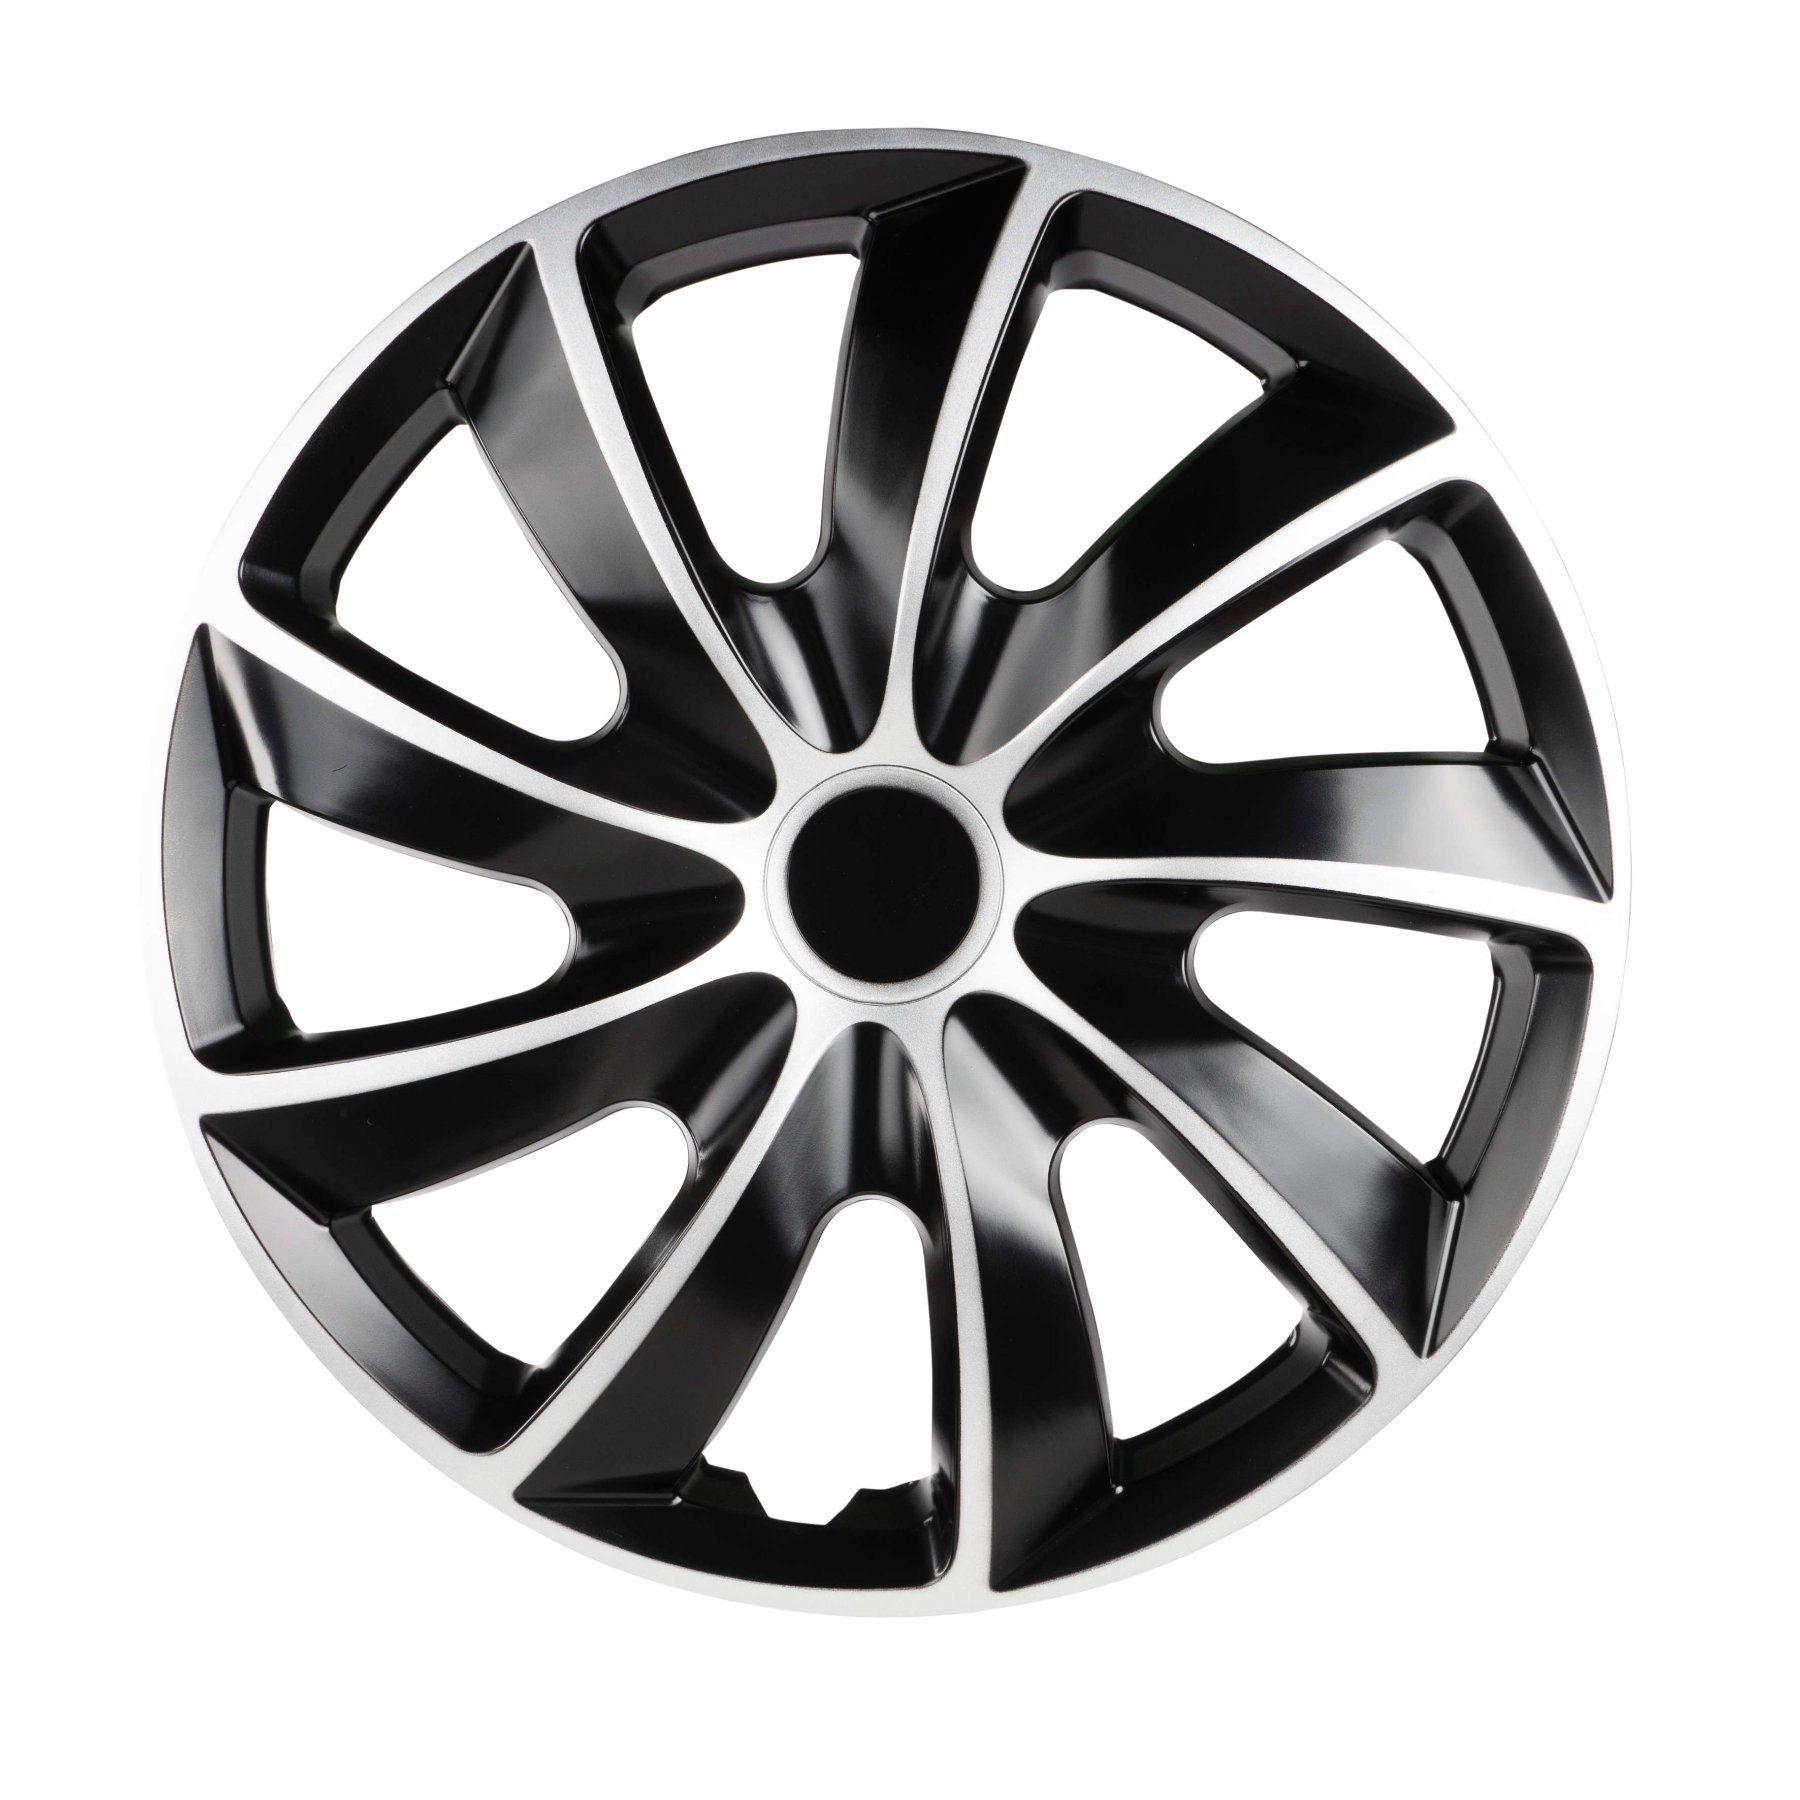 Wheel covers Aero Bicolor 14", 4 piece black/silver